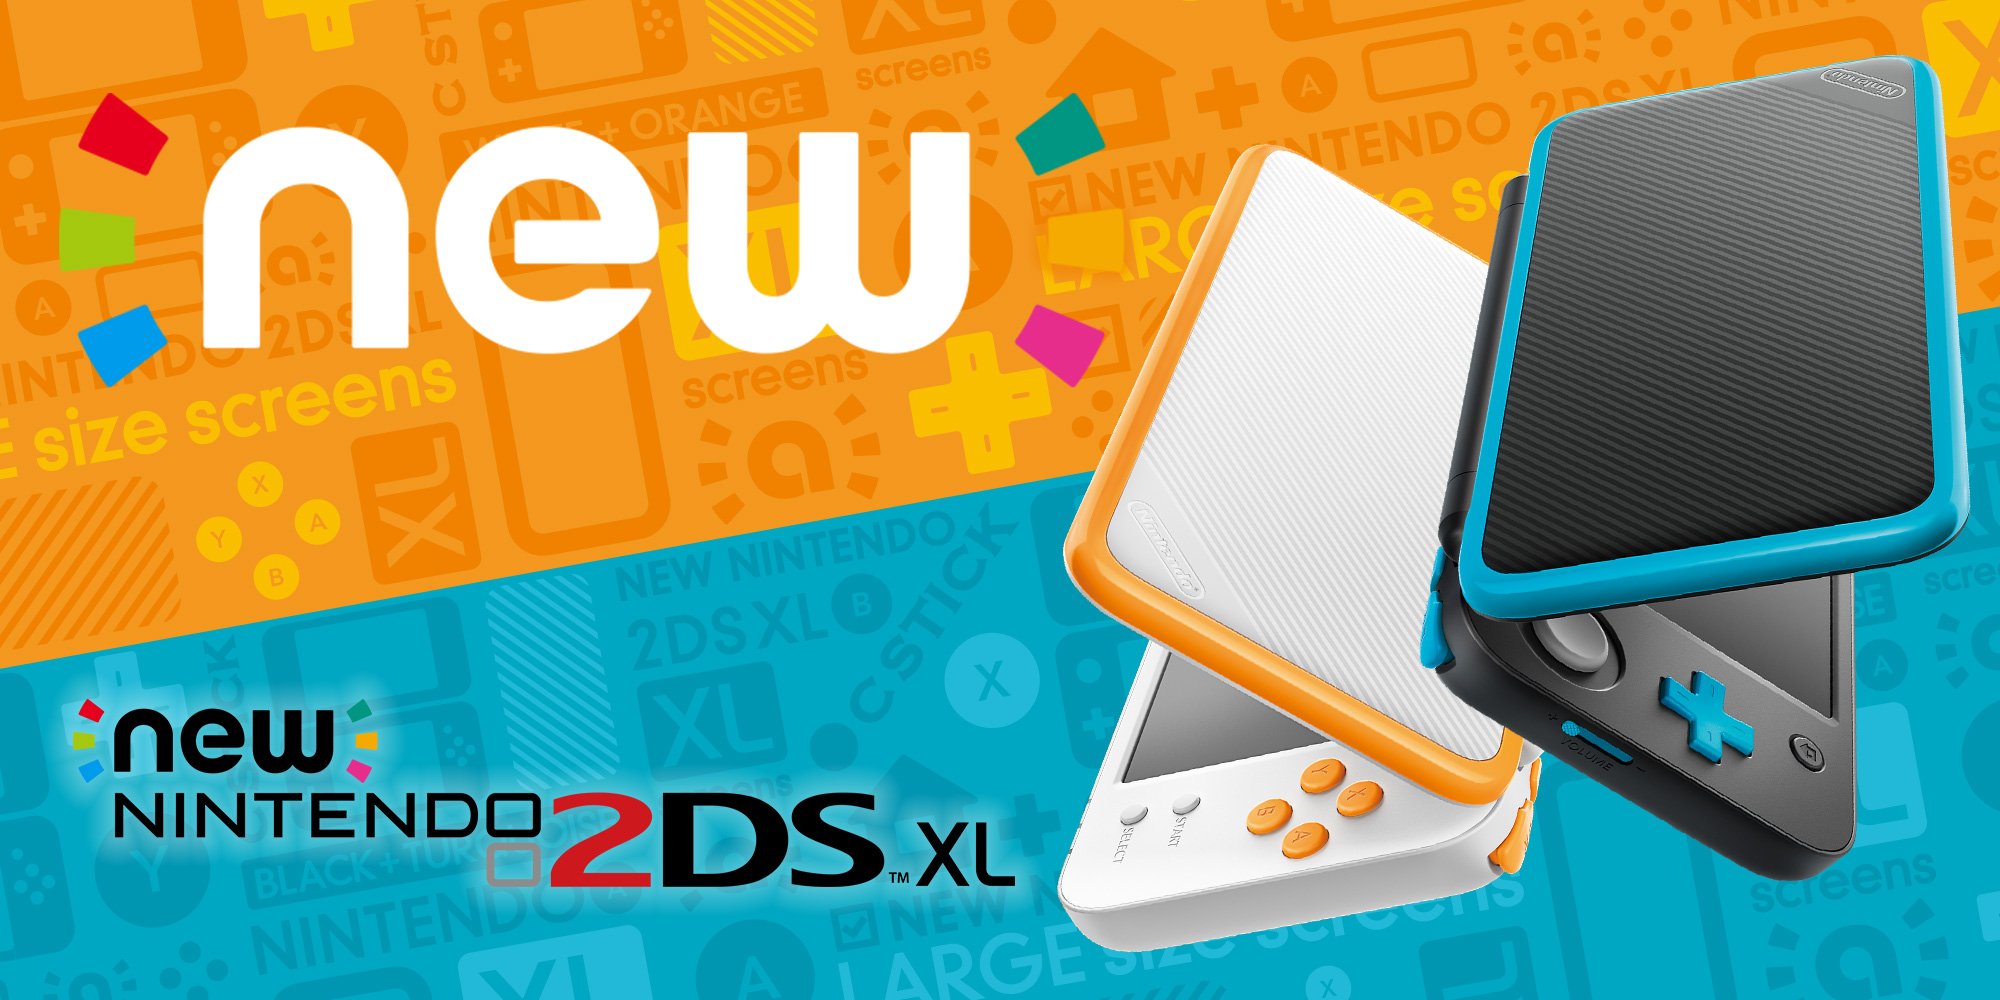 El 28 de julio, Nintendo lanzará su nueva consola New Nintendo 2DS XL